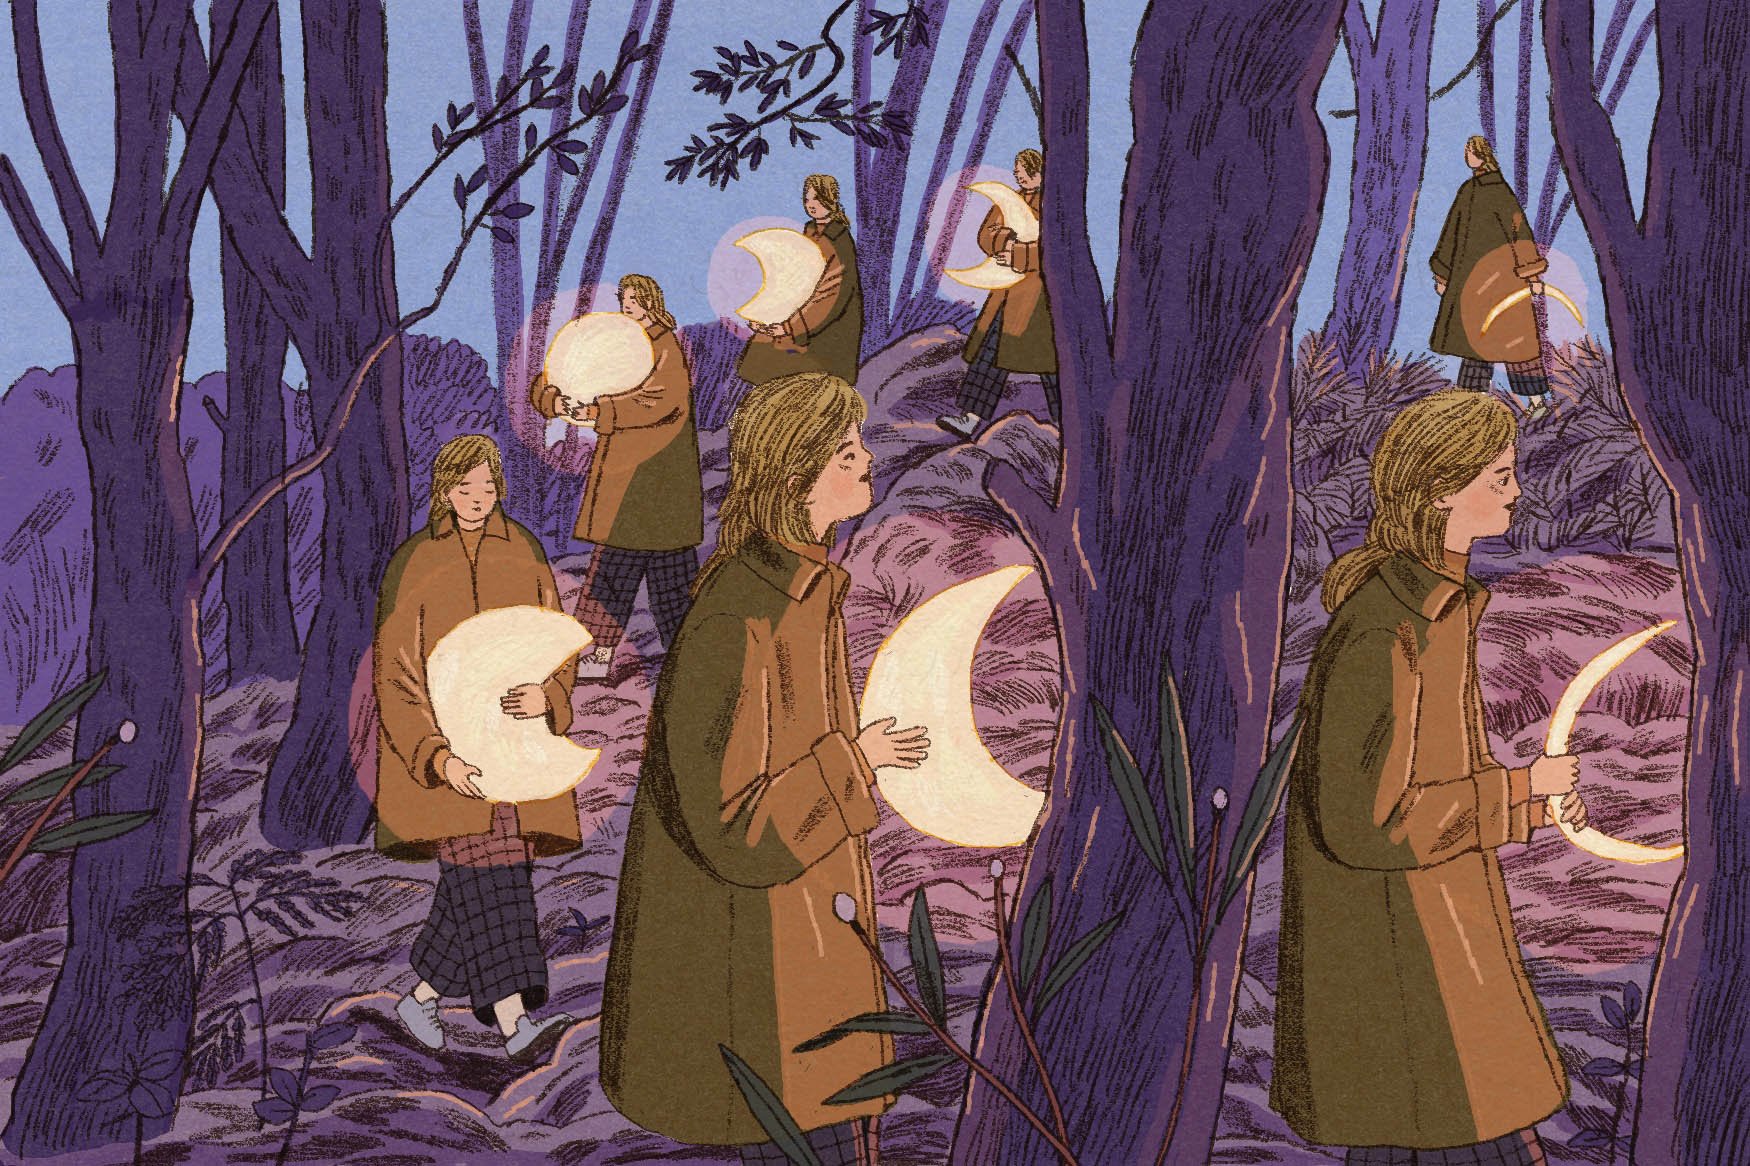 Una ilustración de siete versiones de la misma mujer con cabello color arena que lleva un abrigo marrón y camina por un bosque de noche. Cada una de las siete versiones tiene una luna brillante en una fase diferente, lo que sugiere un ciclo.